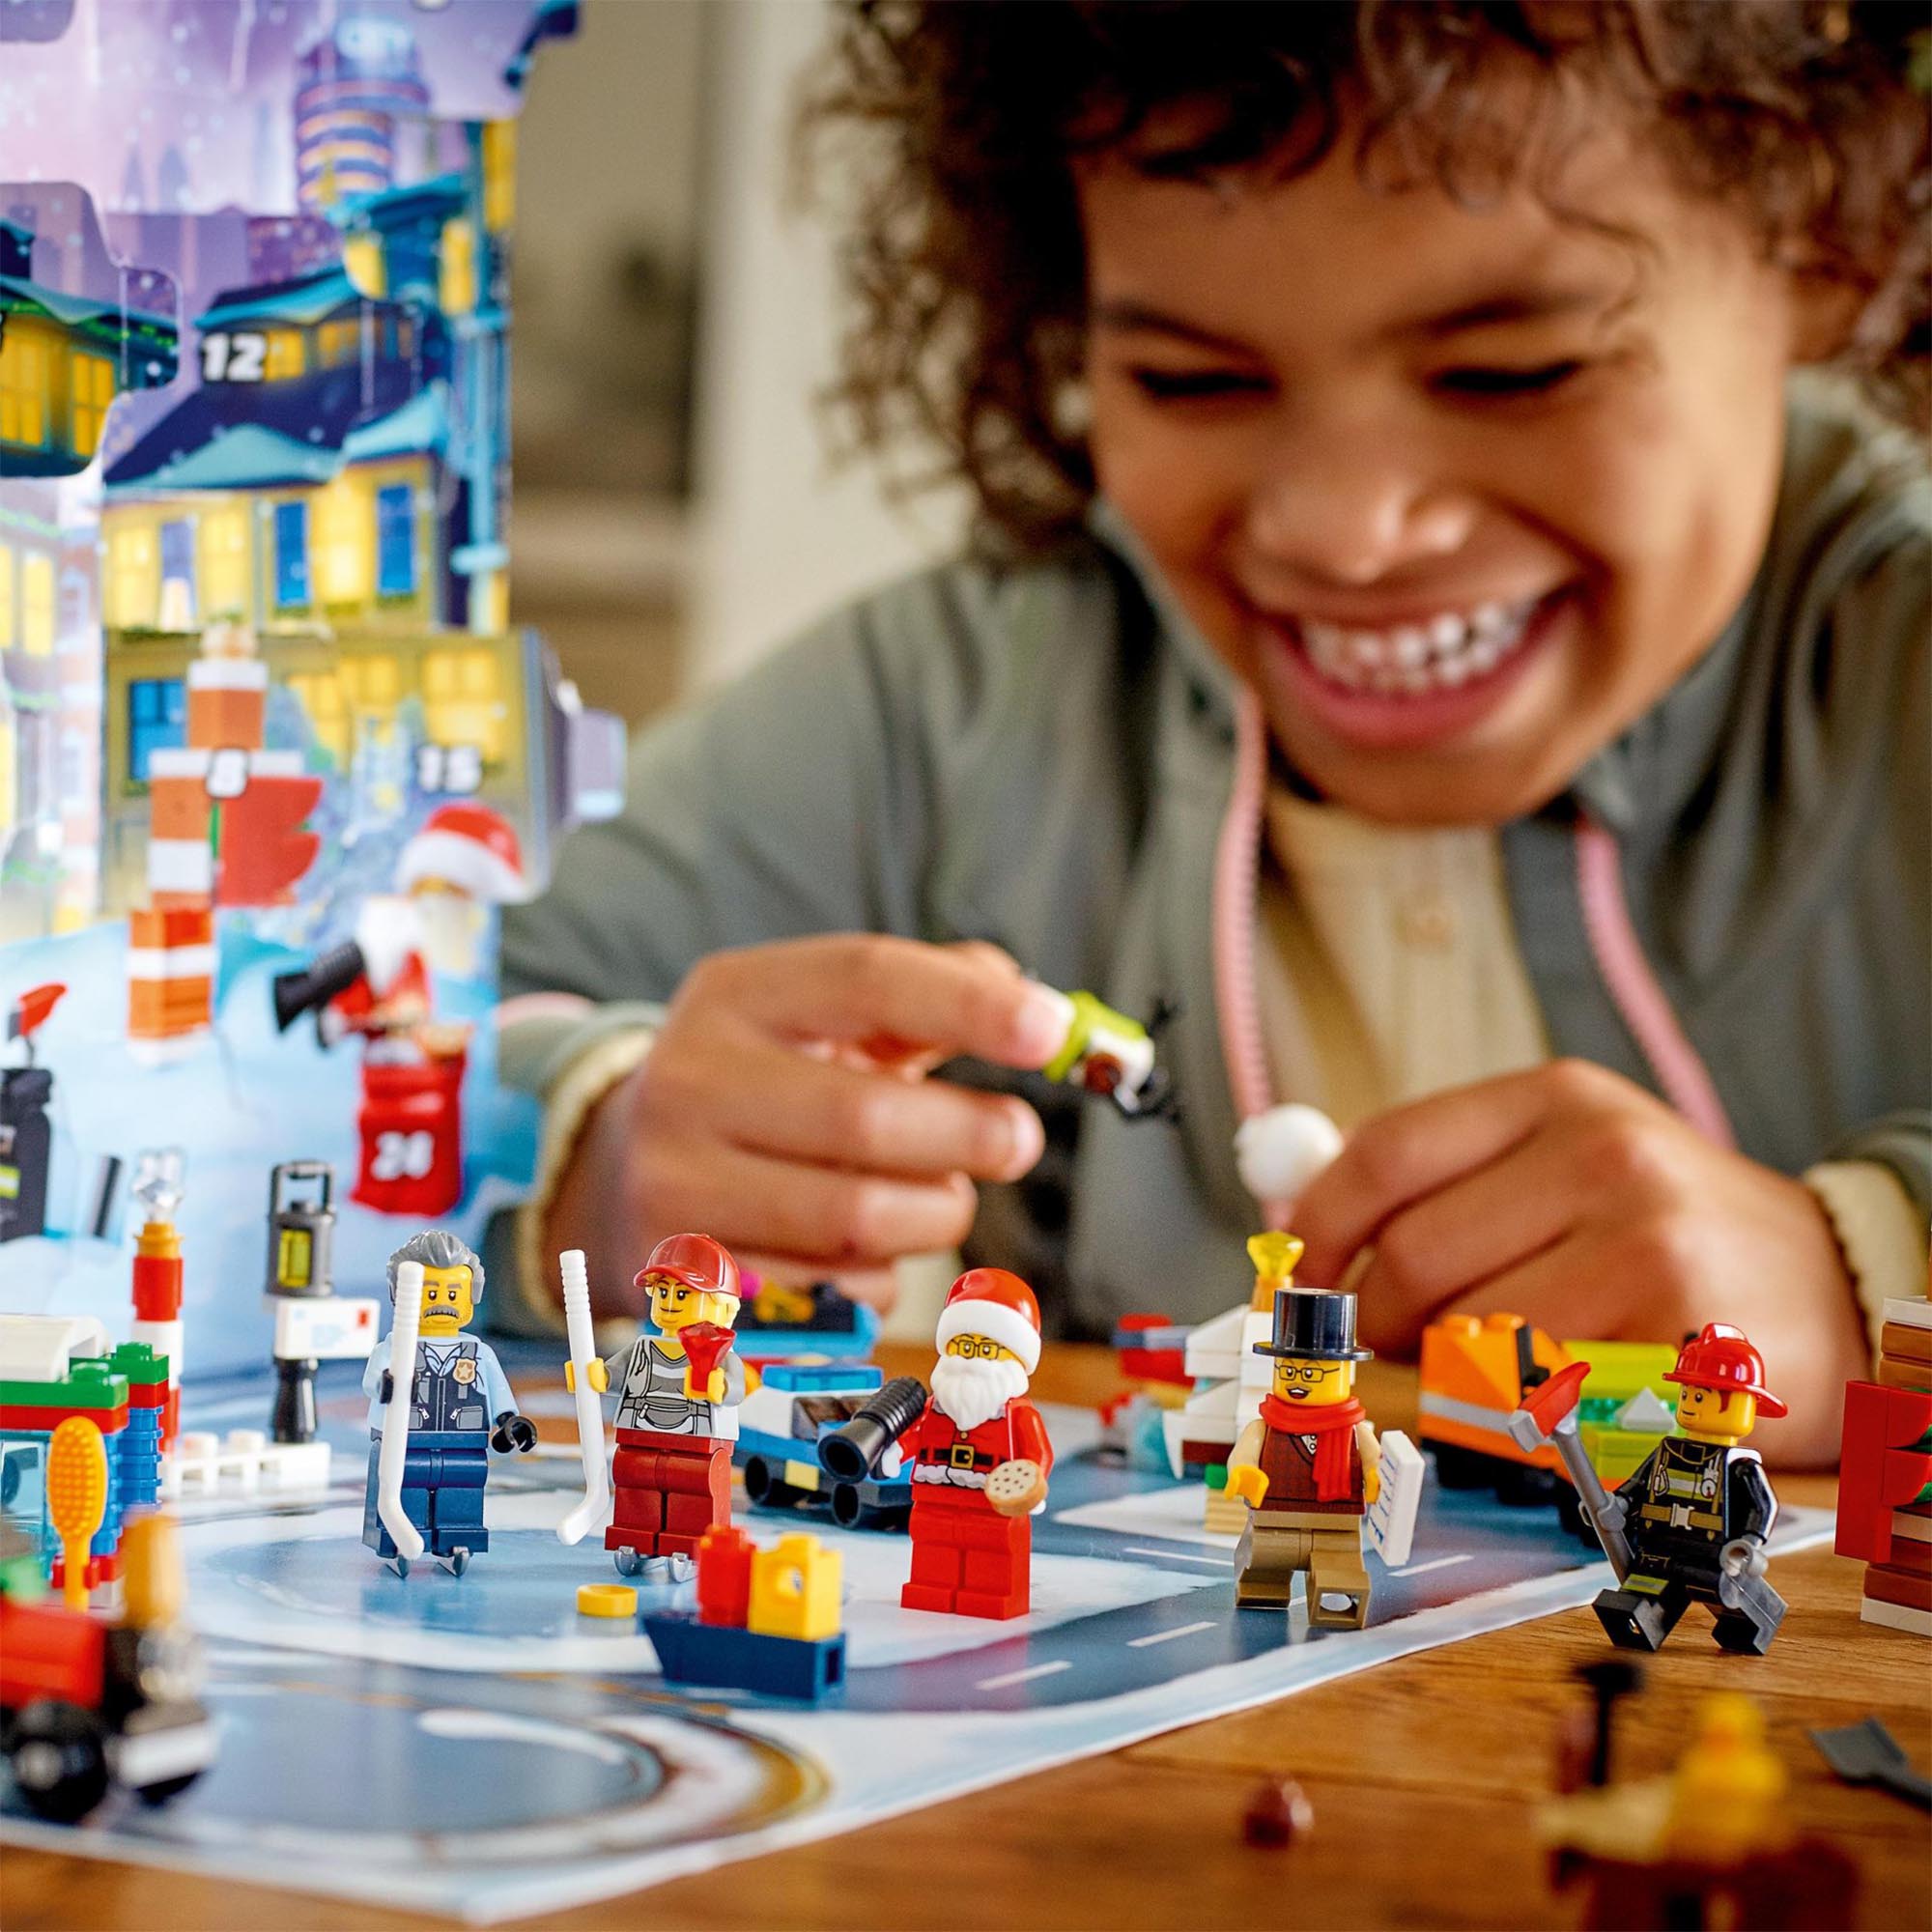 LEGO City Calendario dell'Avvento 2021, Giocattoli Natalizi per Bambini dai 5 A 60303, , large